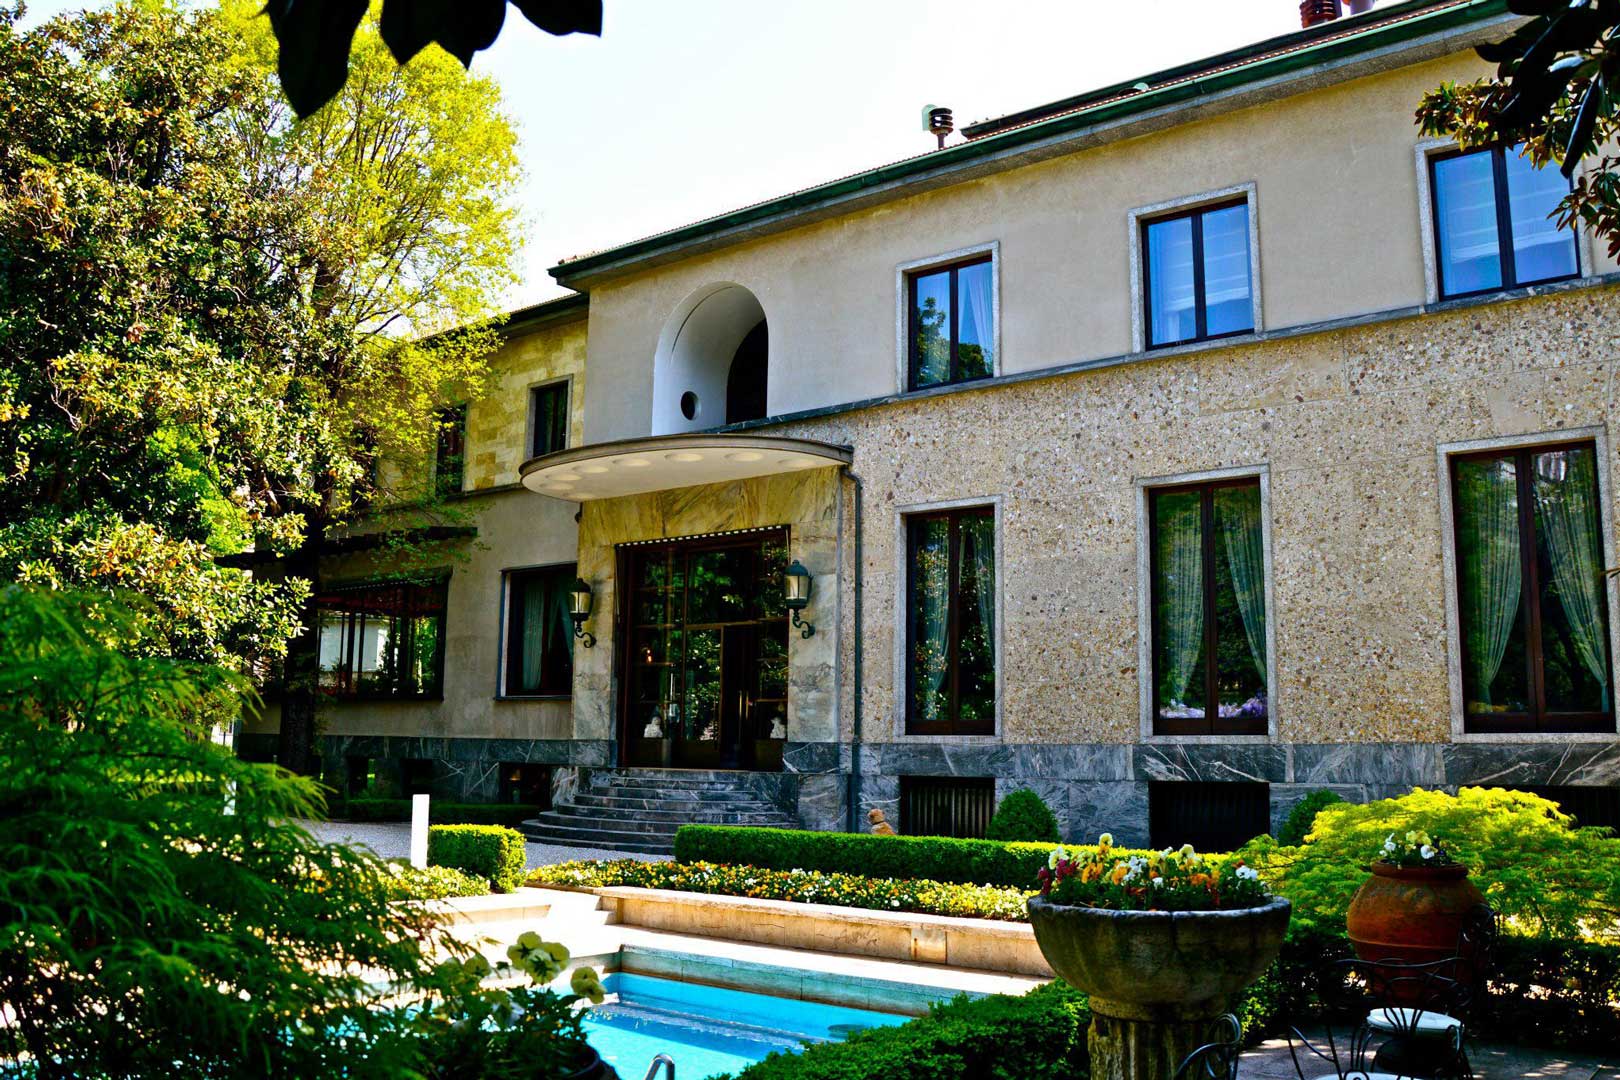  Villa  Necchi Campiglio Flawless Milano  The Lifestyle Guide